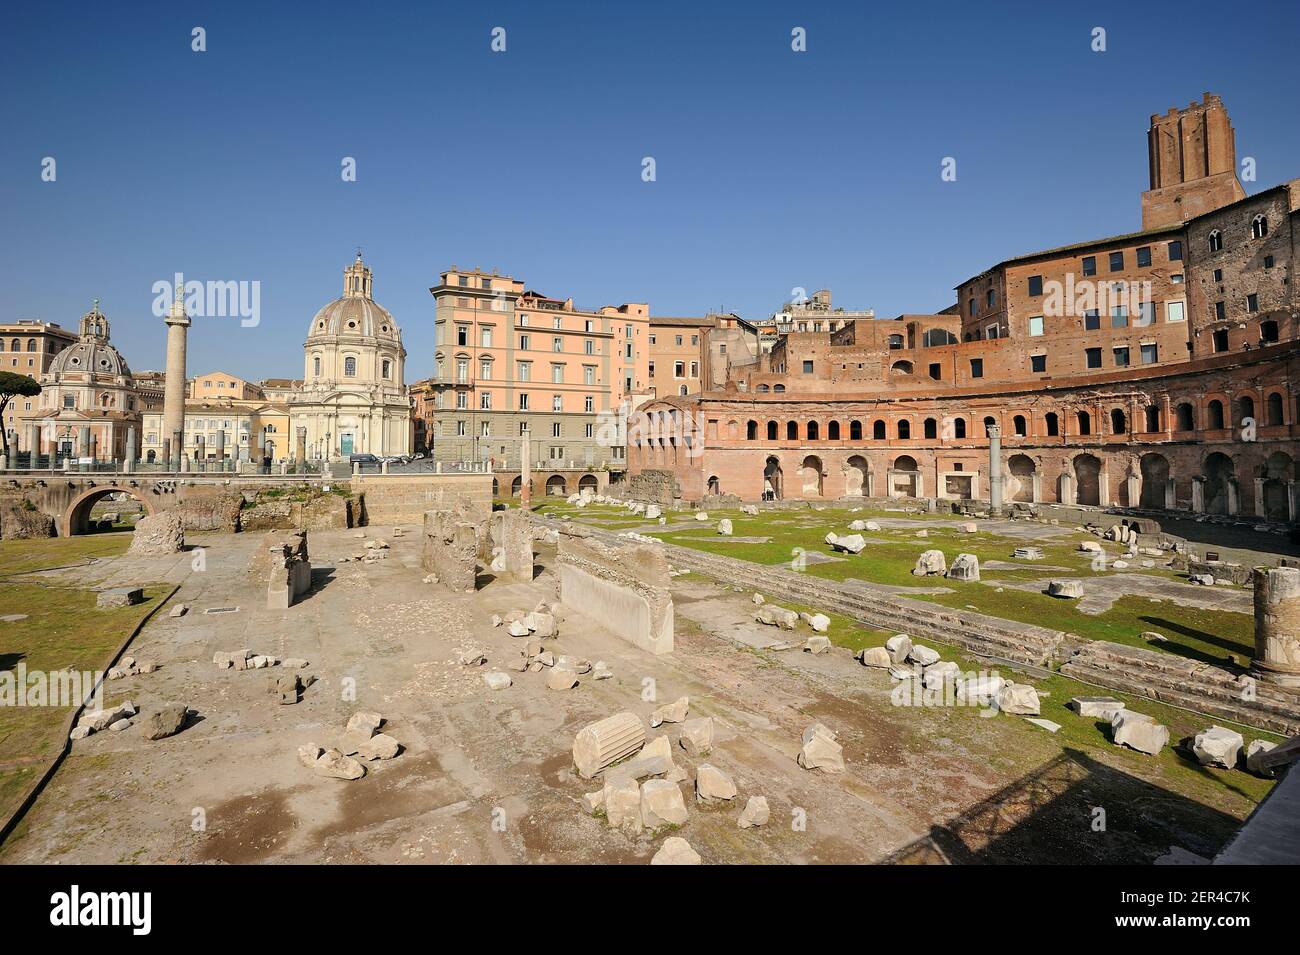 Italy, Rome, Trajan's Forum and market Stock Photo